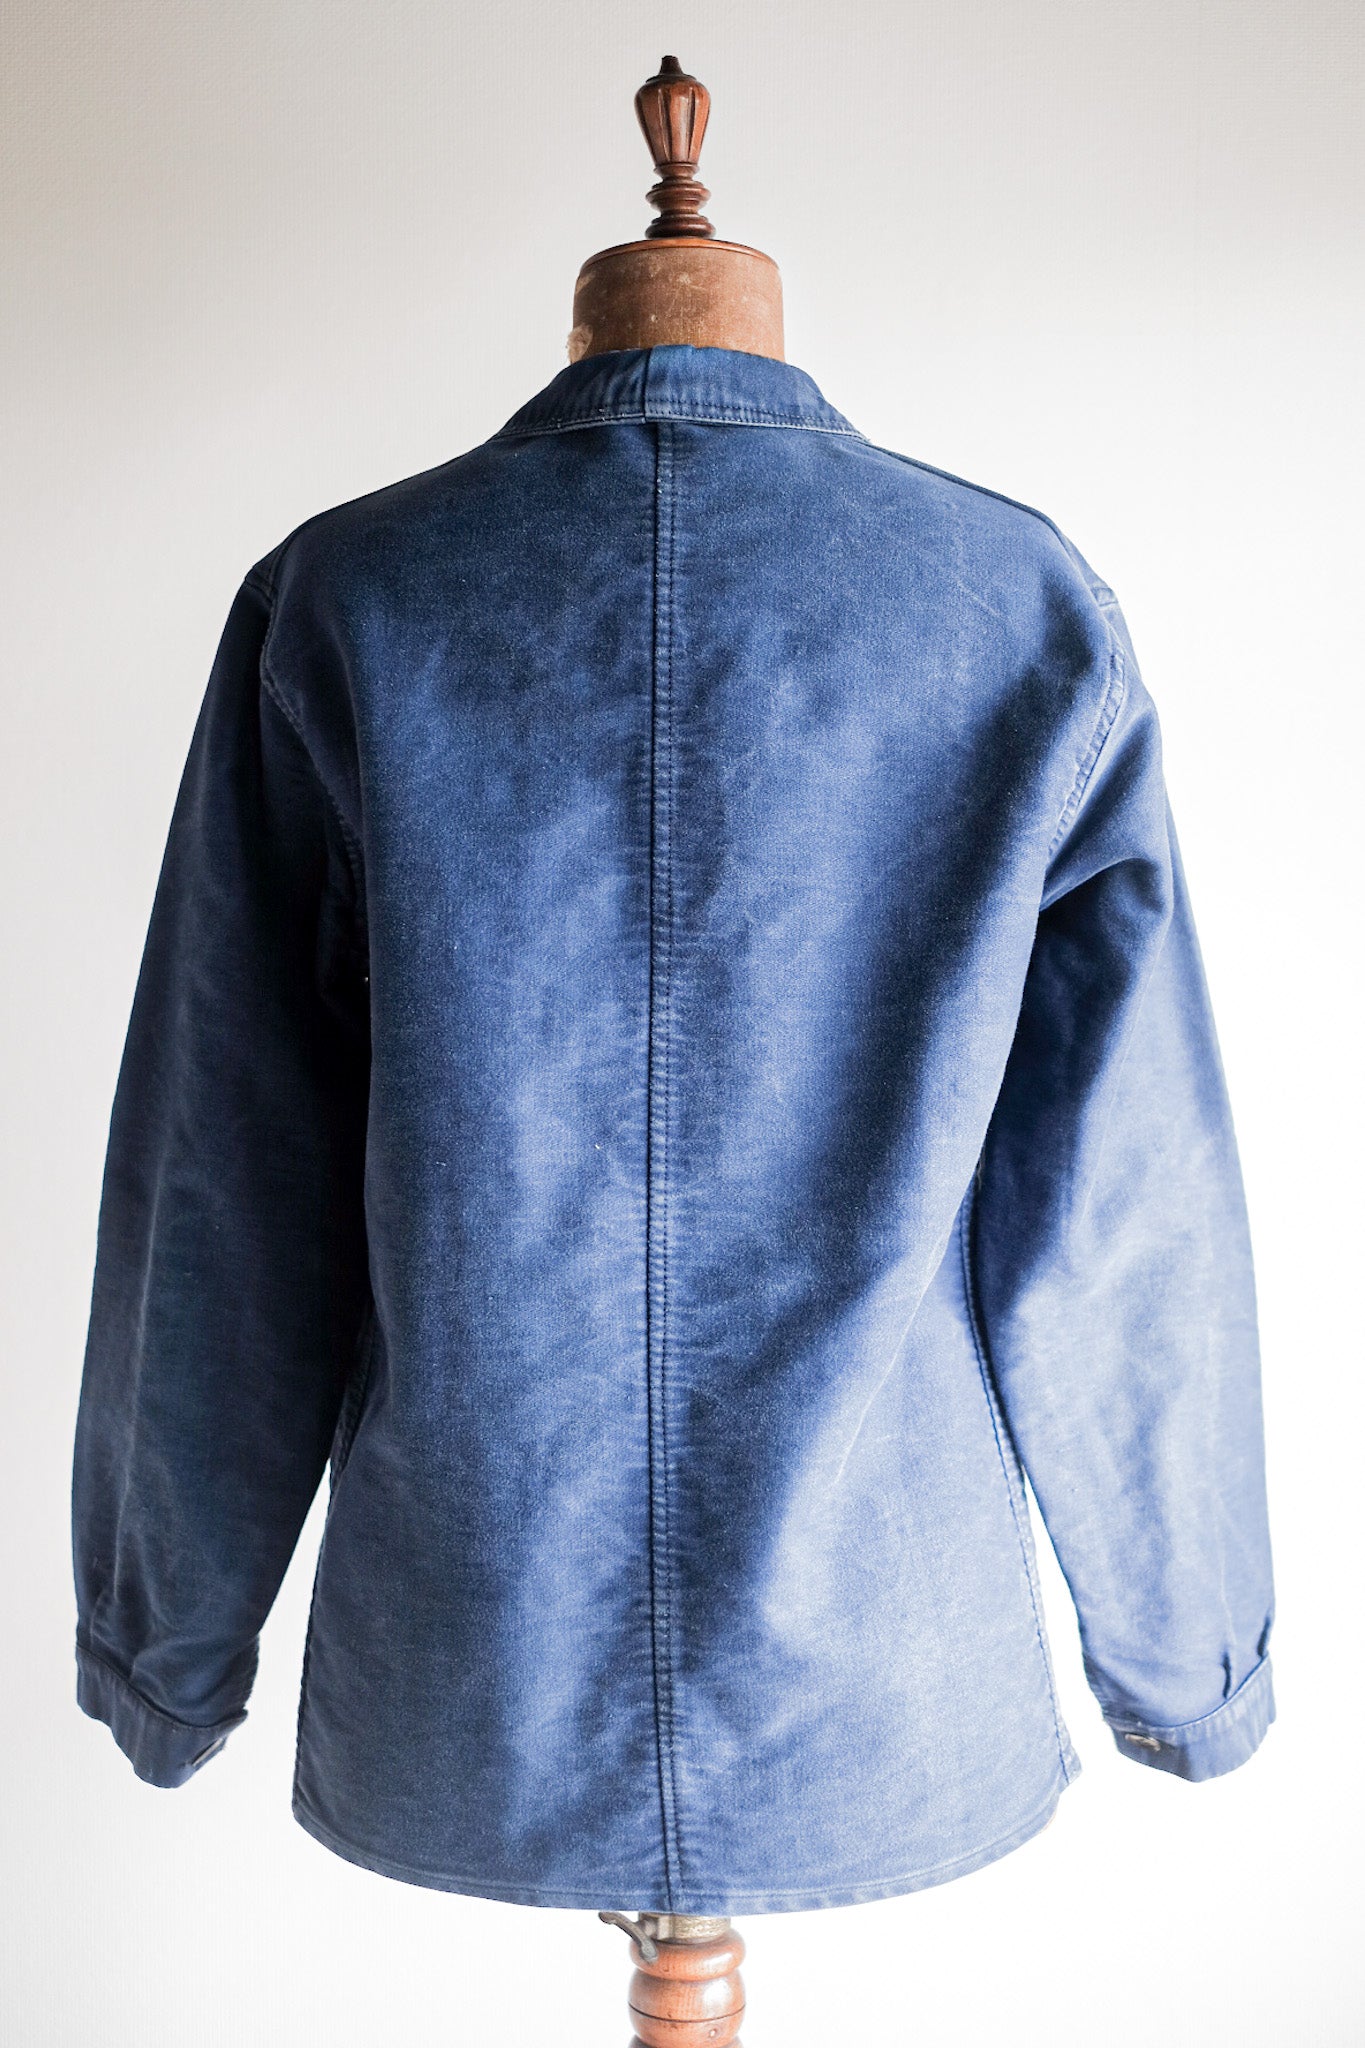 [~ 40 '] 프랑스 빈티지 블루 몰스 피부 작업 재킷